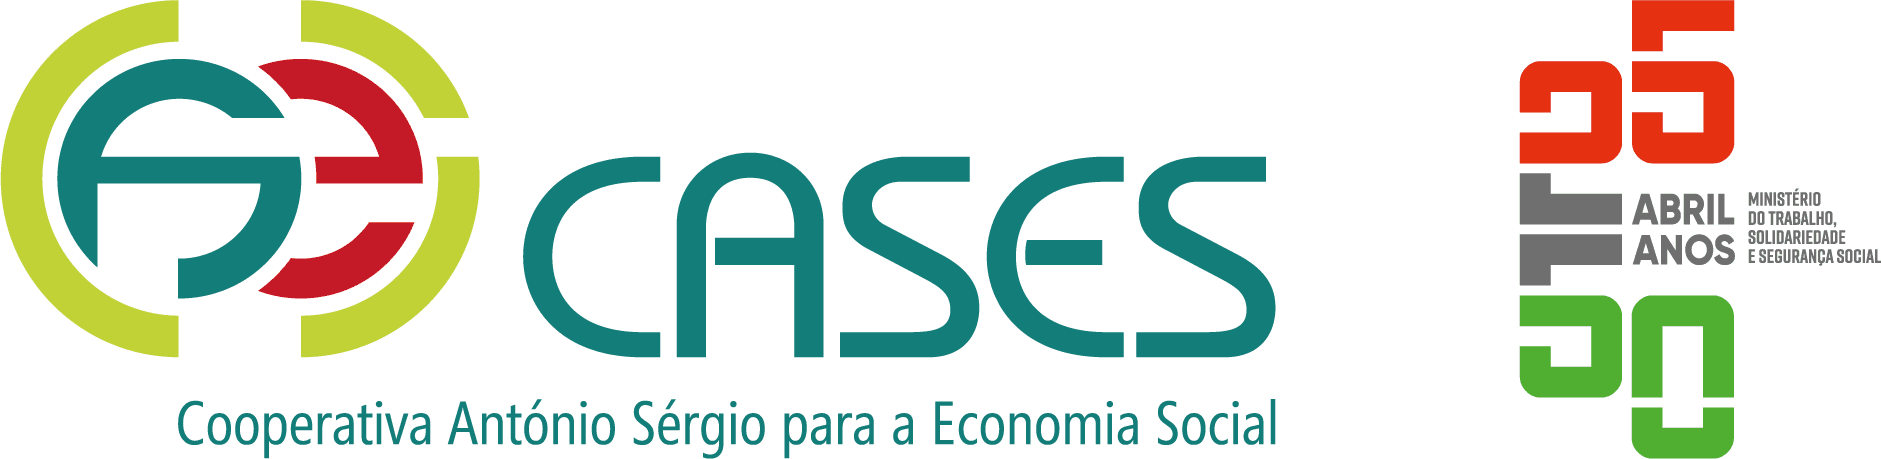 CASES - Cooperativa António Sérgio para a Economia Social